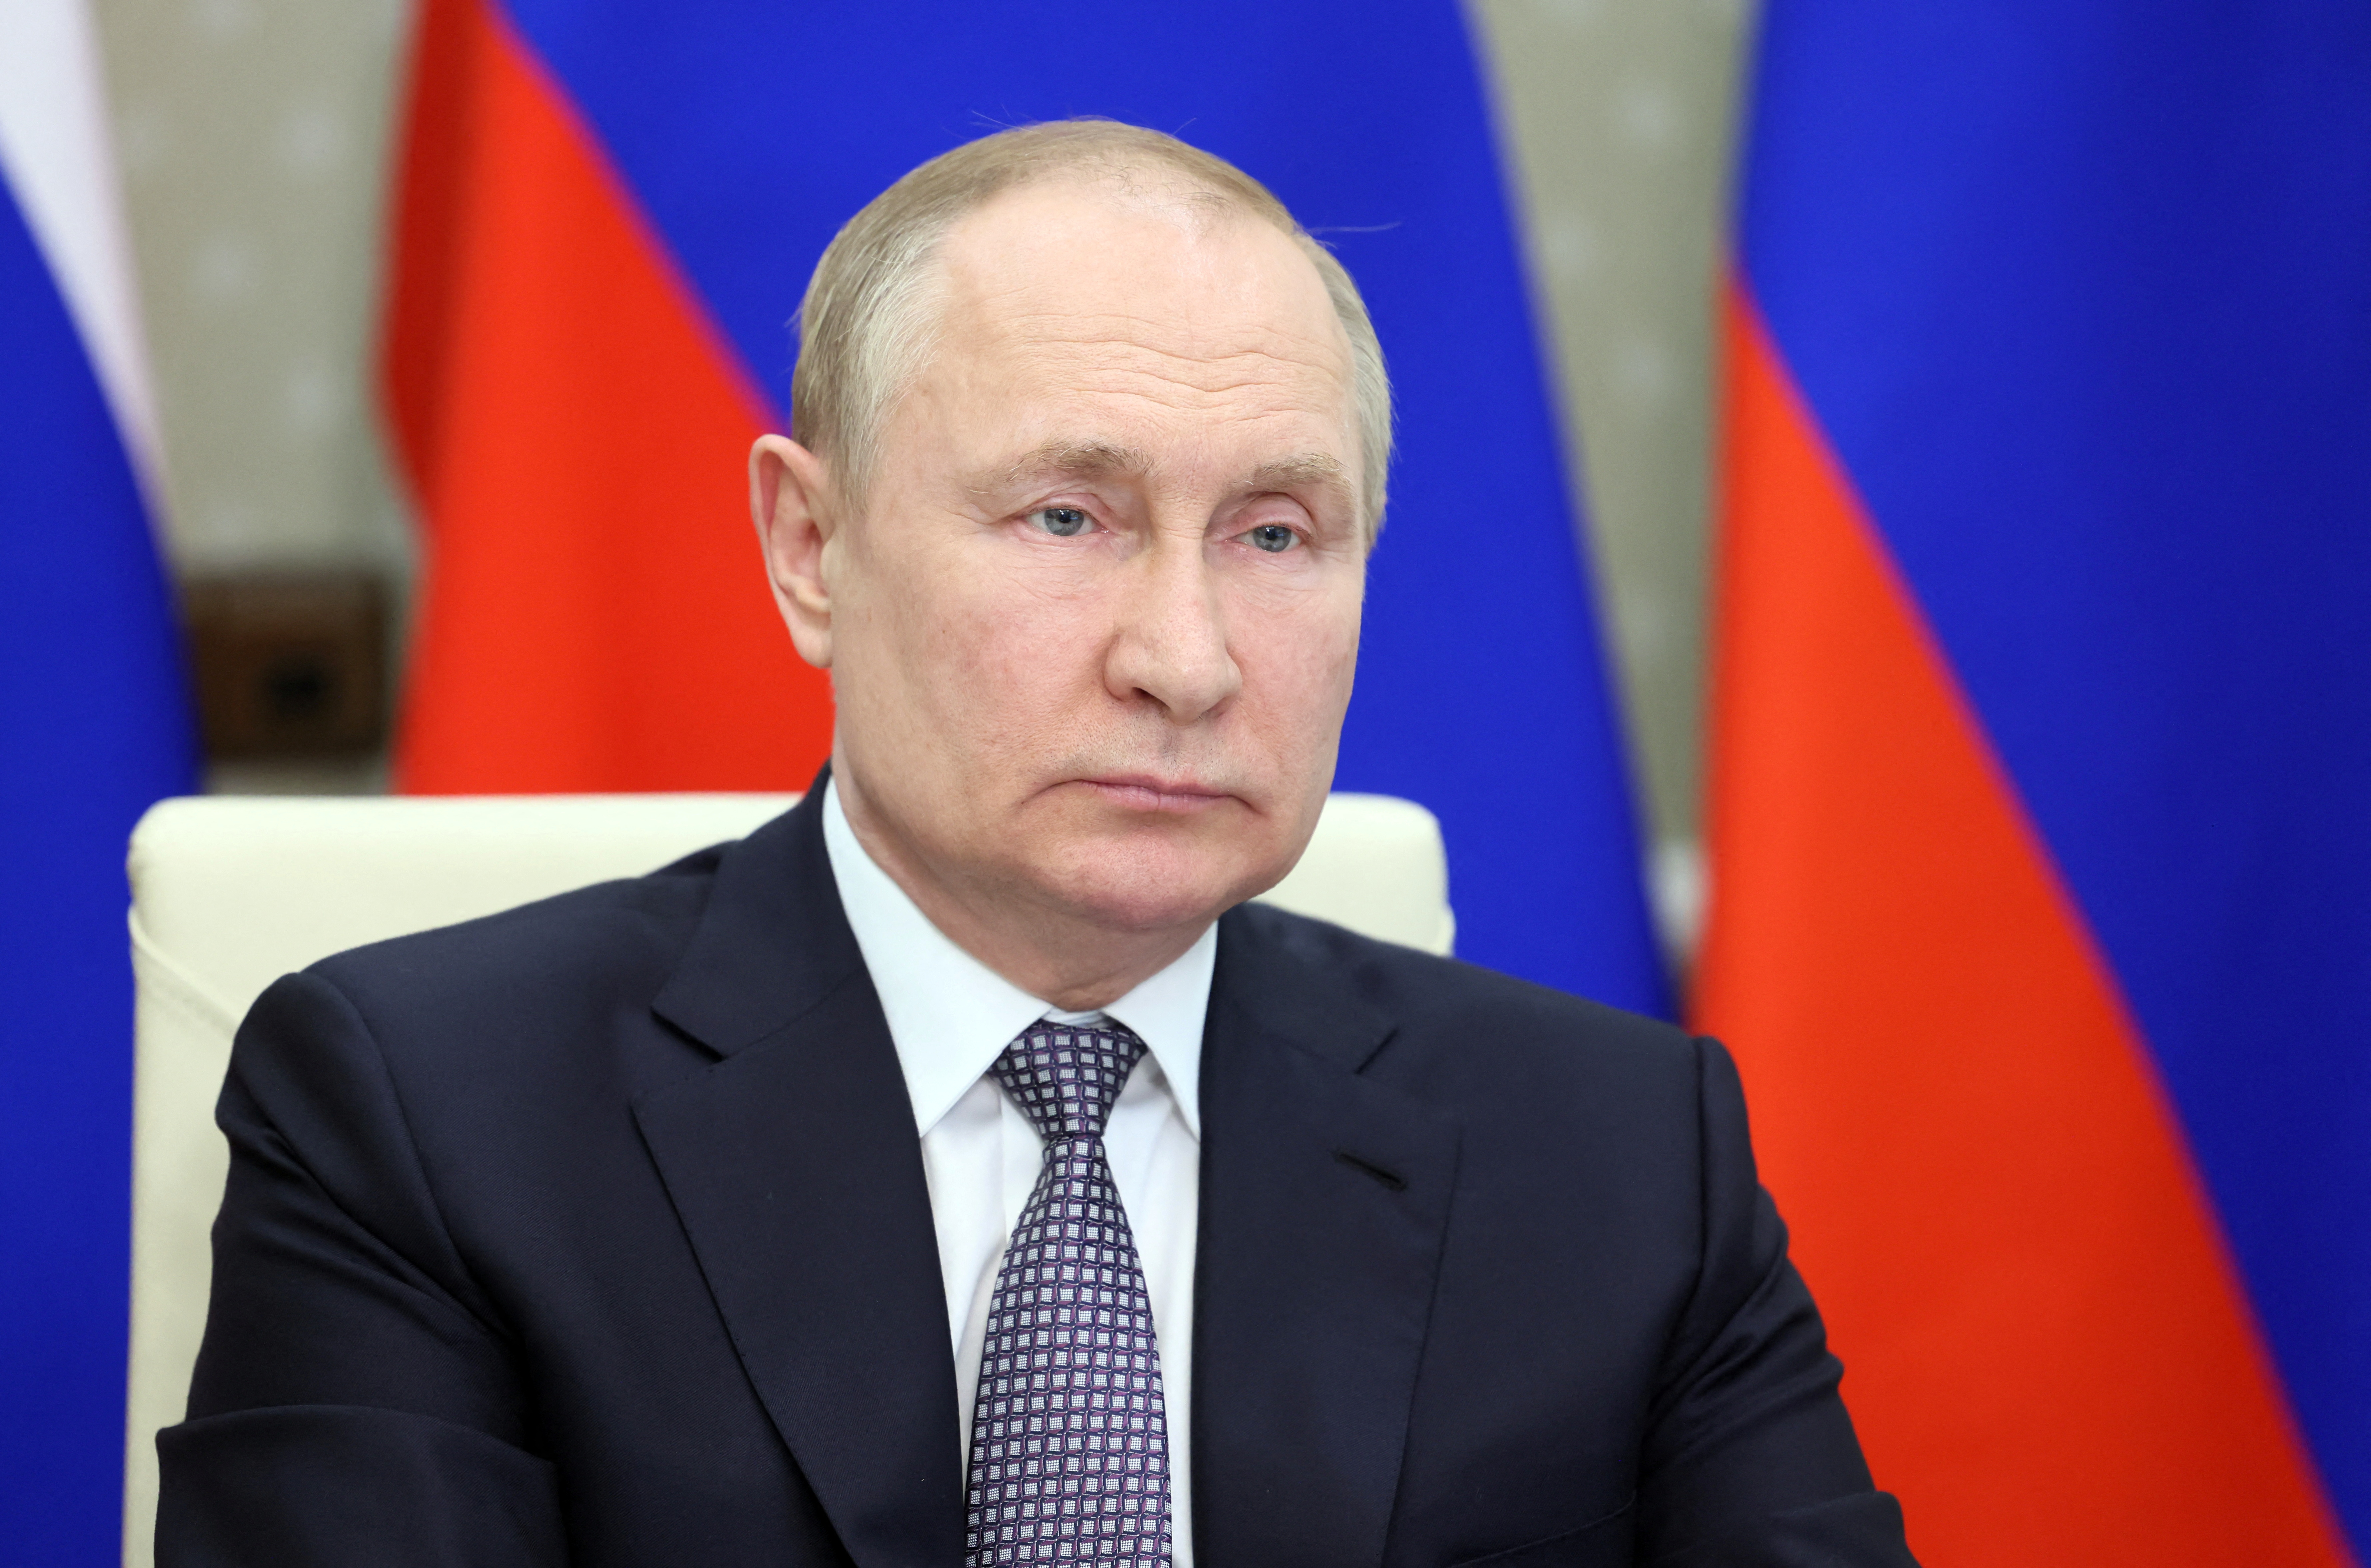 Vladimir Putin (Sputnik/Mikhail Metzel/Kremlin via REUTERS)